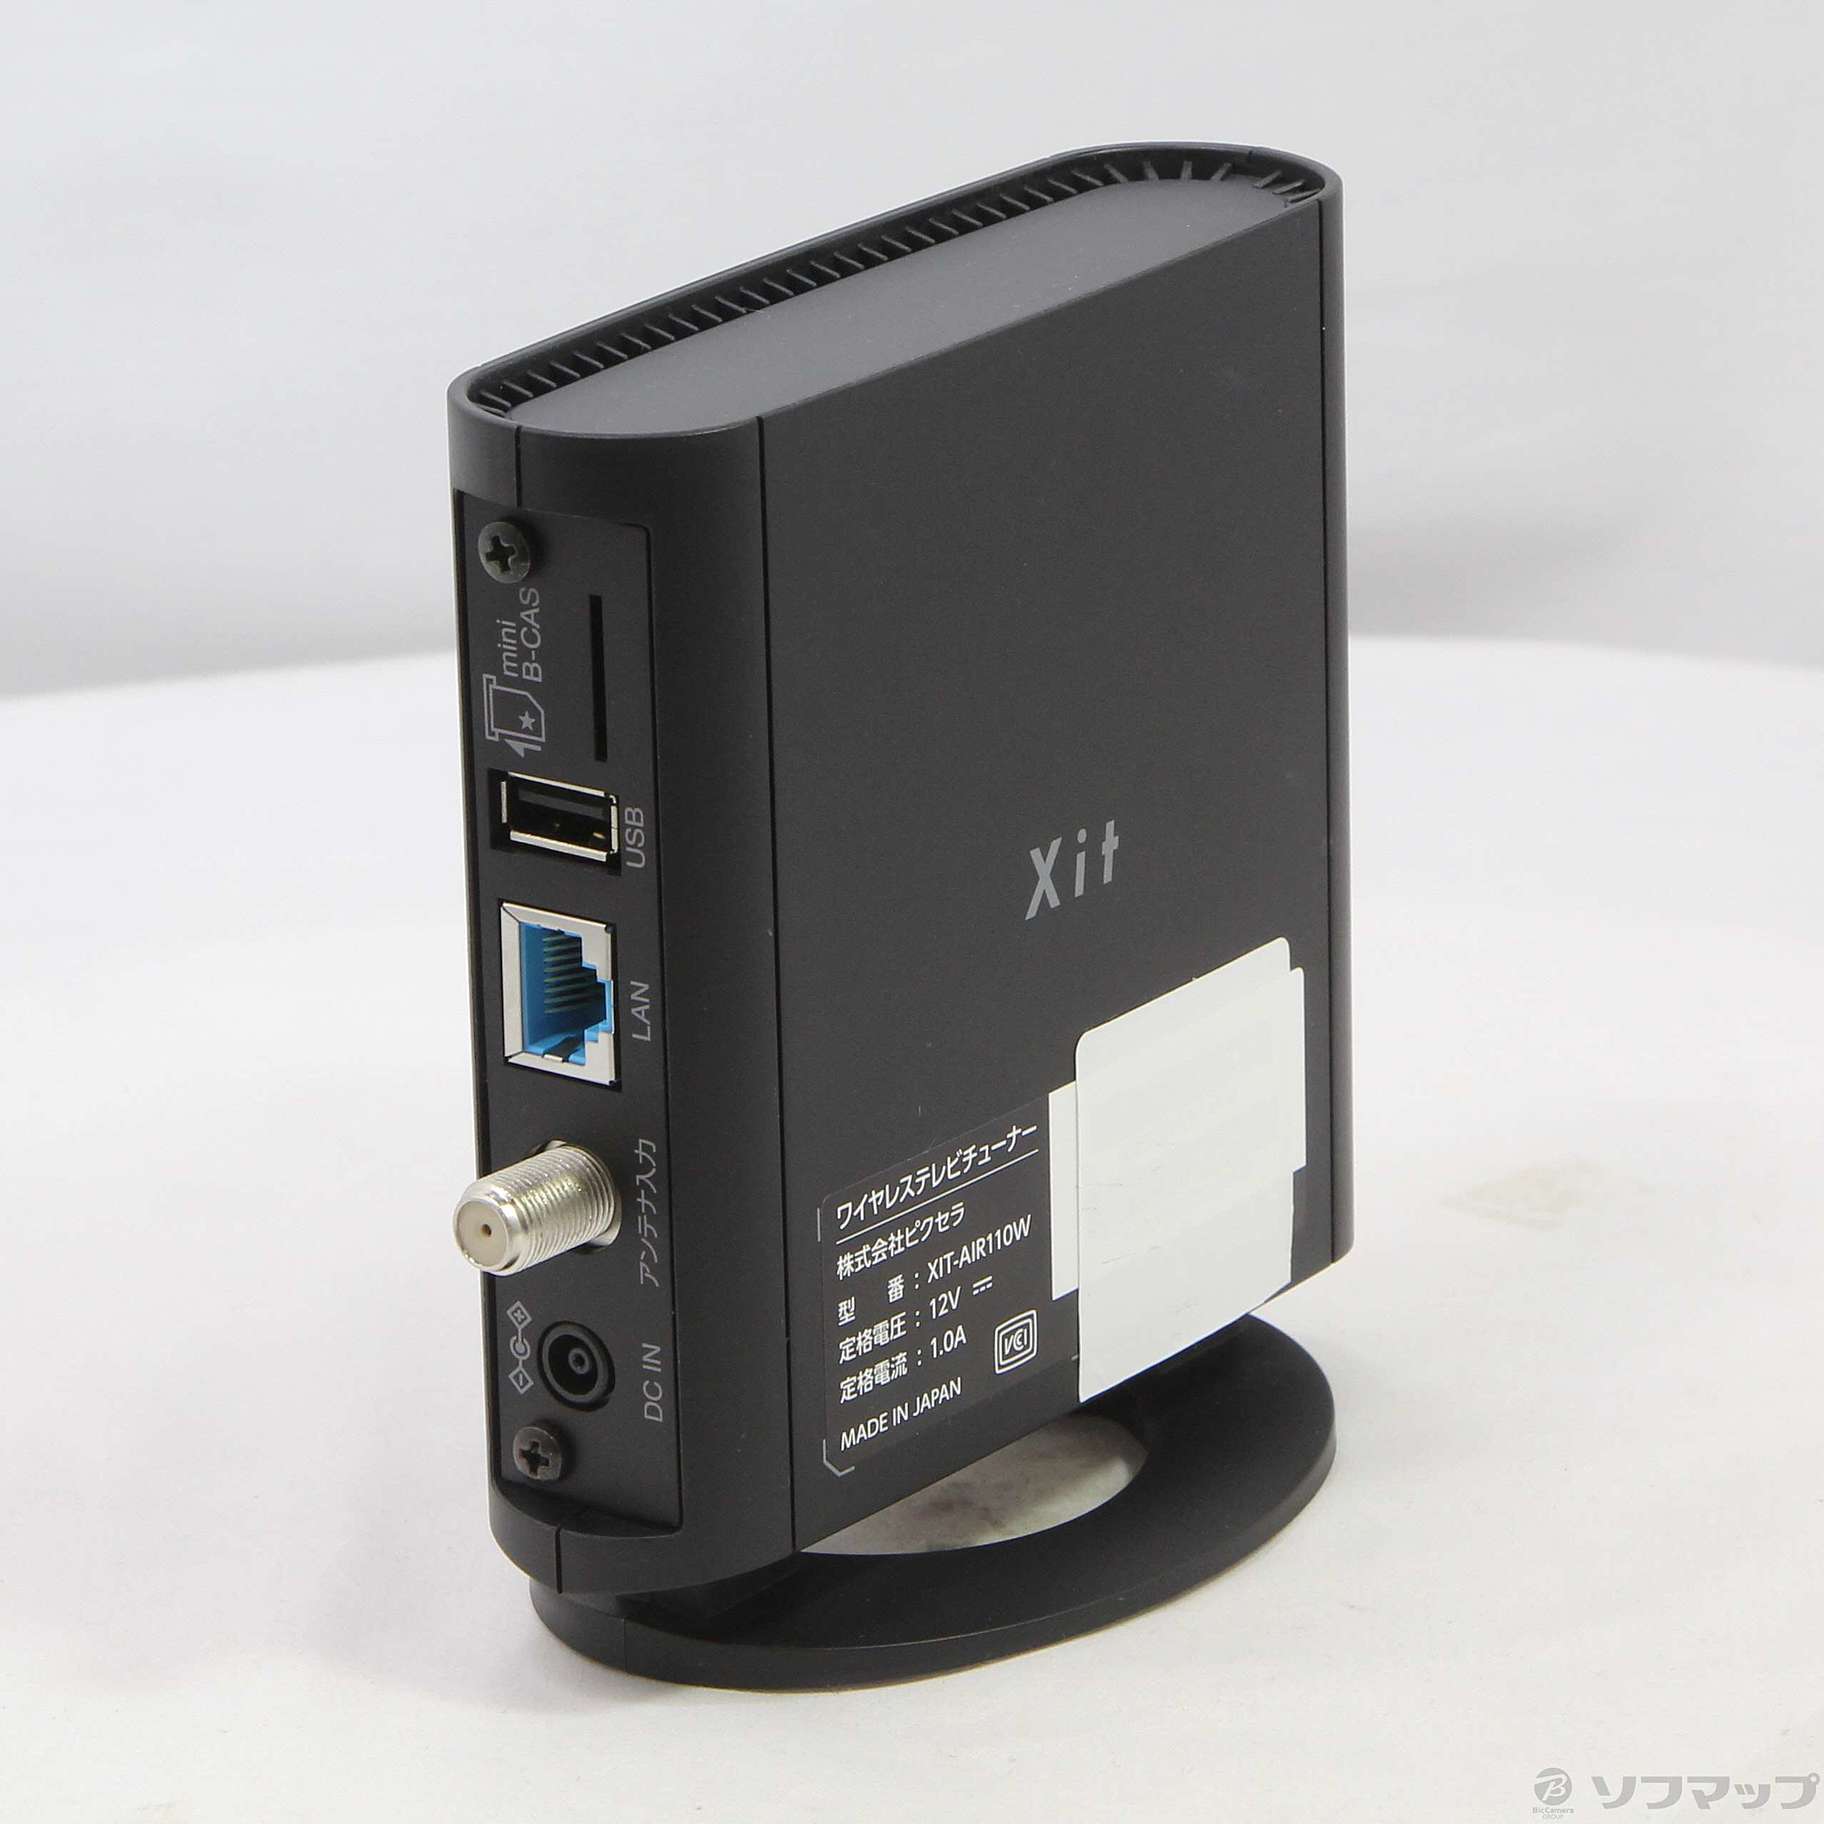 ピクセラ Xit AirBox テレビチューナー XIT-AIR110W - テレビ